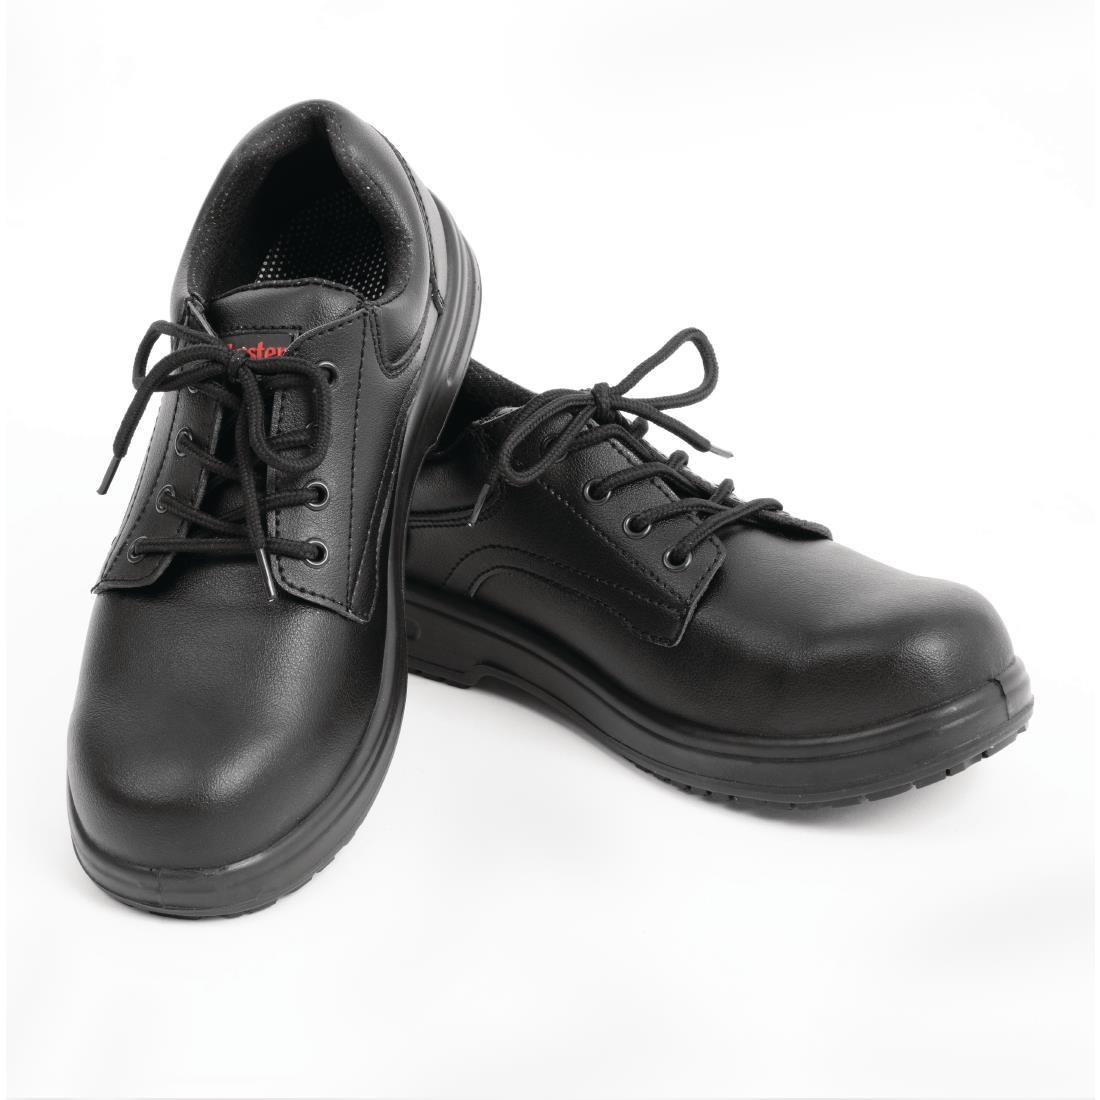 Slipbuster Basic Toe Cap Safety Shoes Black 37 - BB497-37  - 4